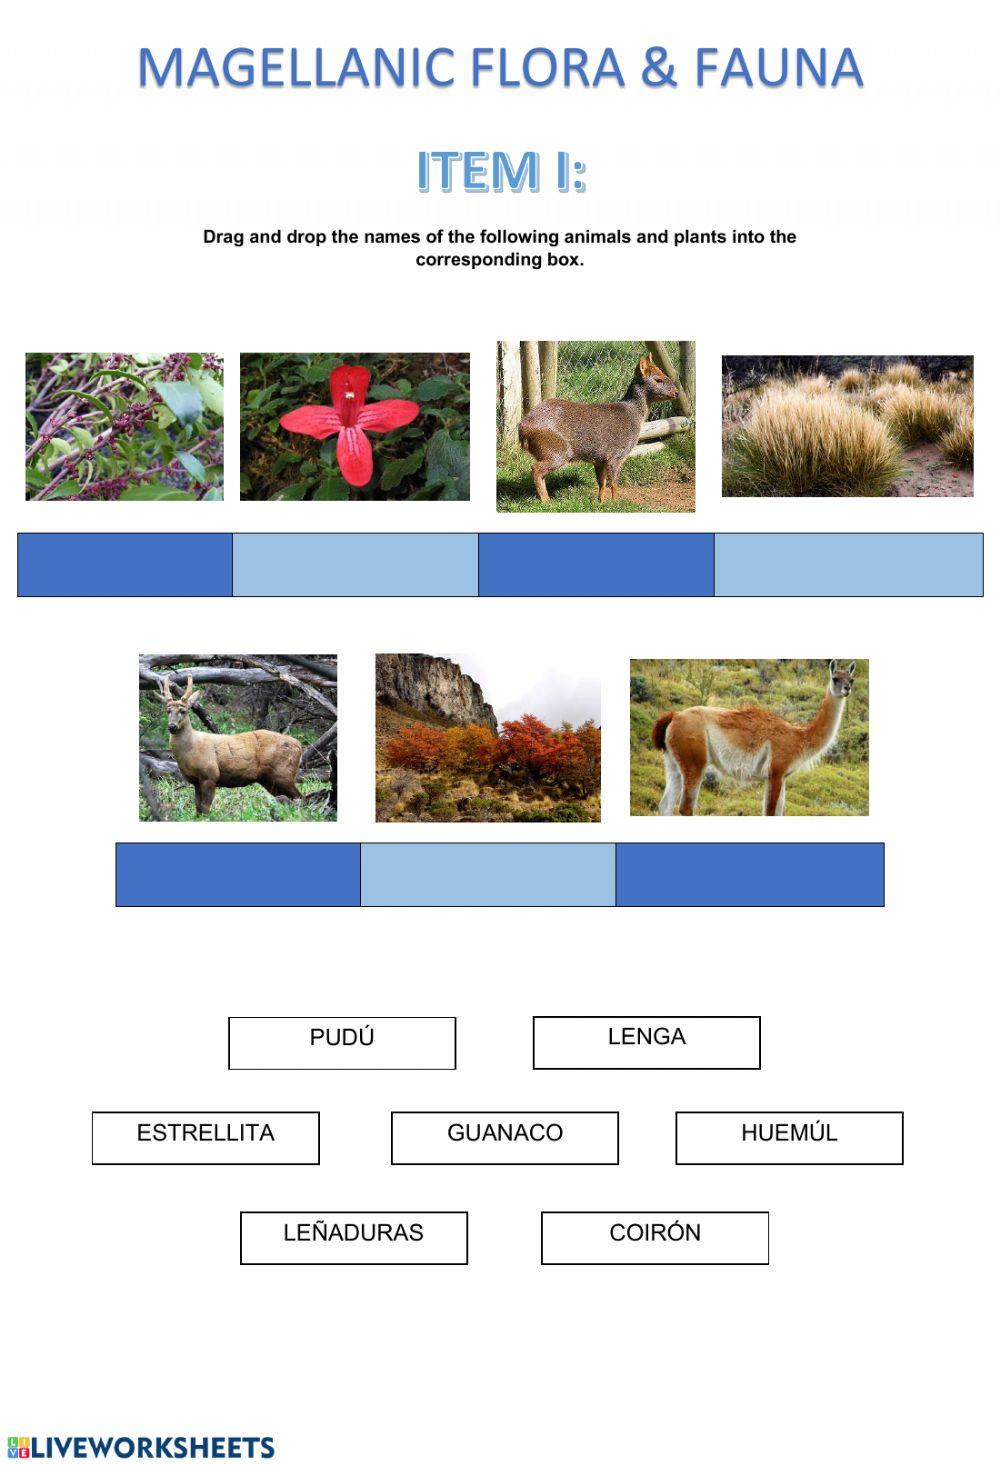 Magellanic flora & fauna